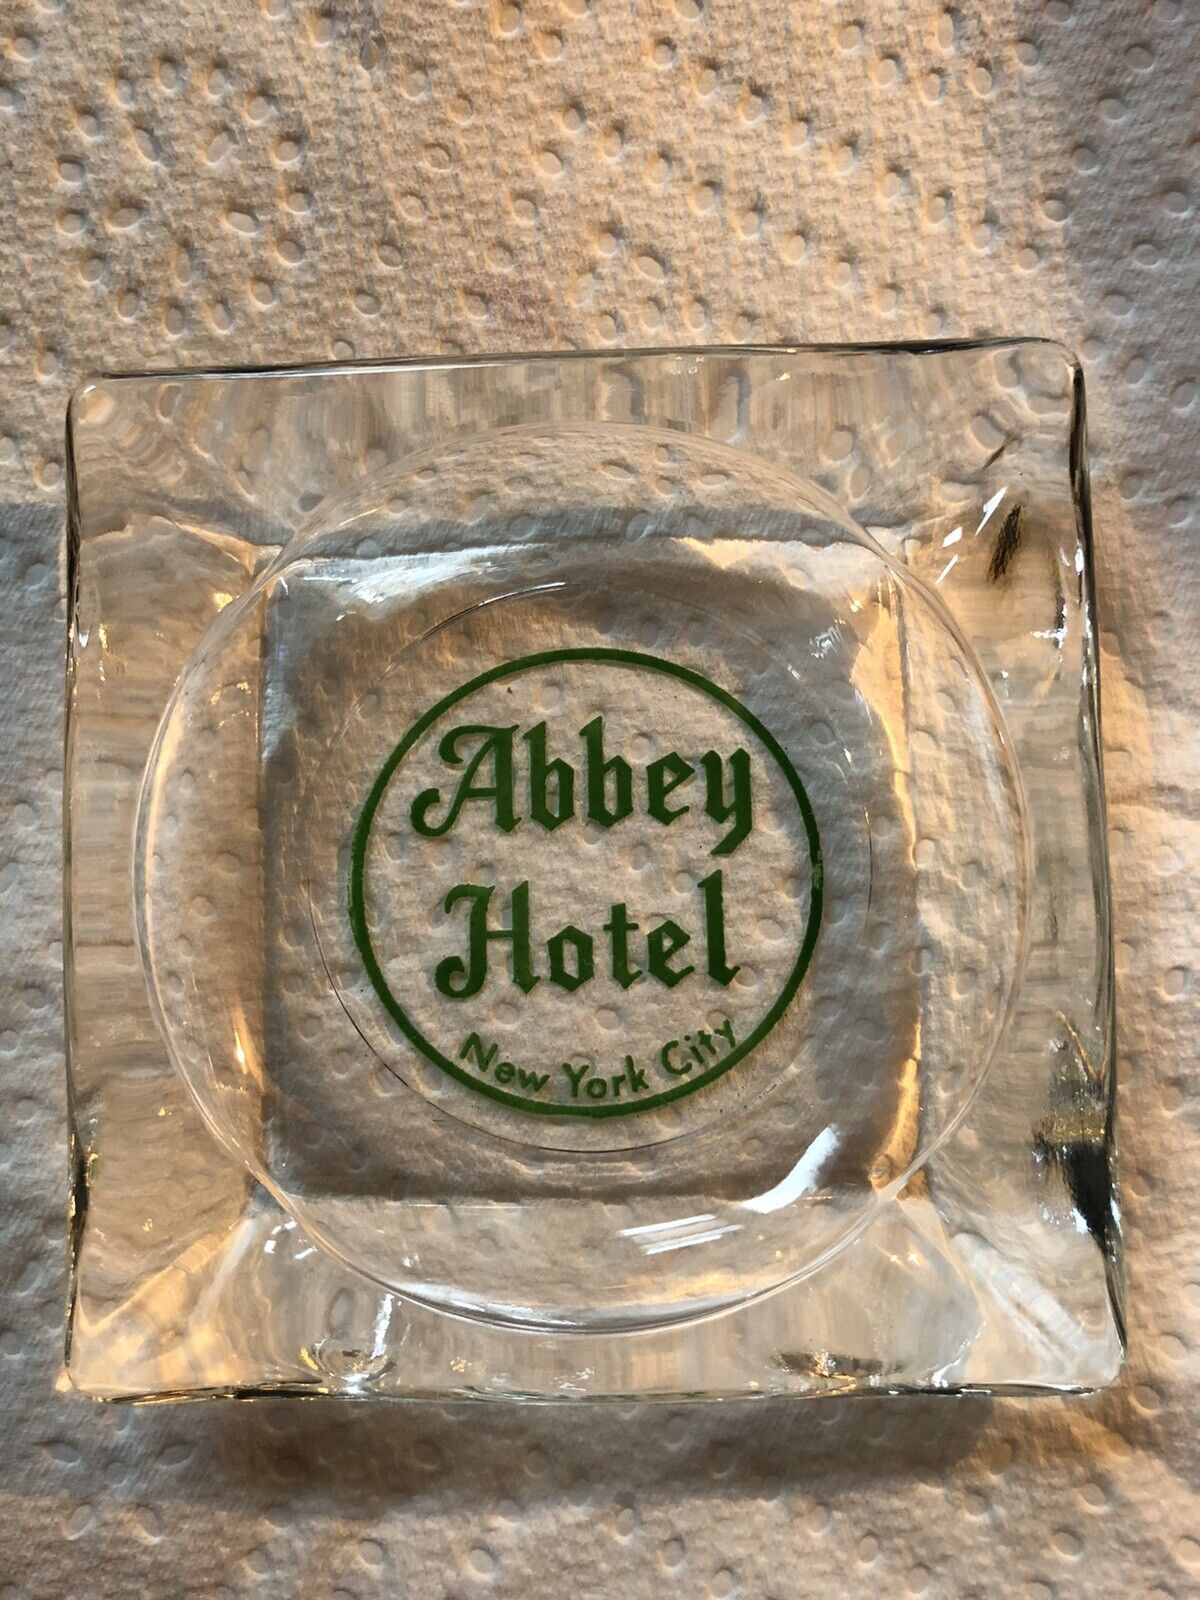 ABBEY HOTEL NYC VINTAGE RARE ART DECO SQUARE GLASS ASHTRAY CIRCA 1938